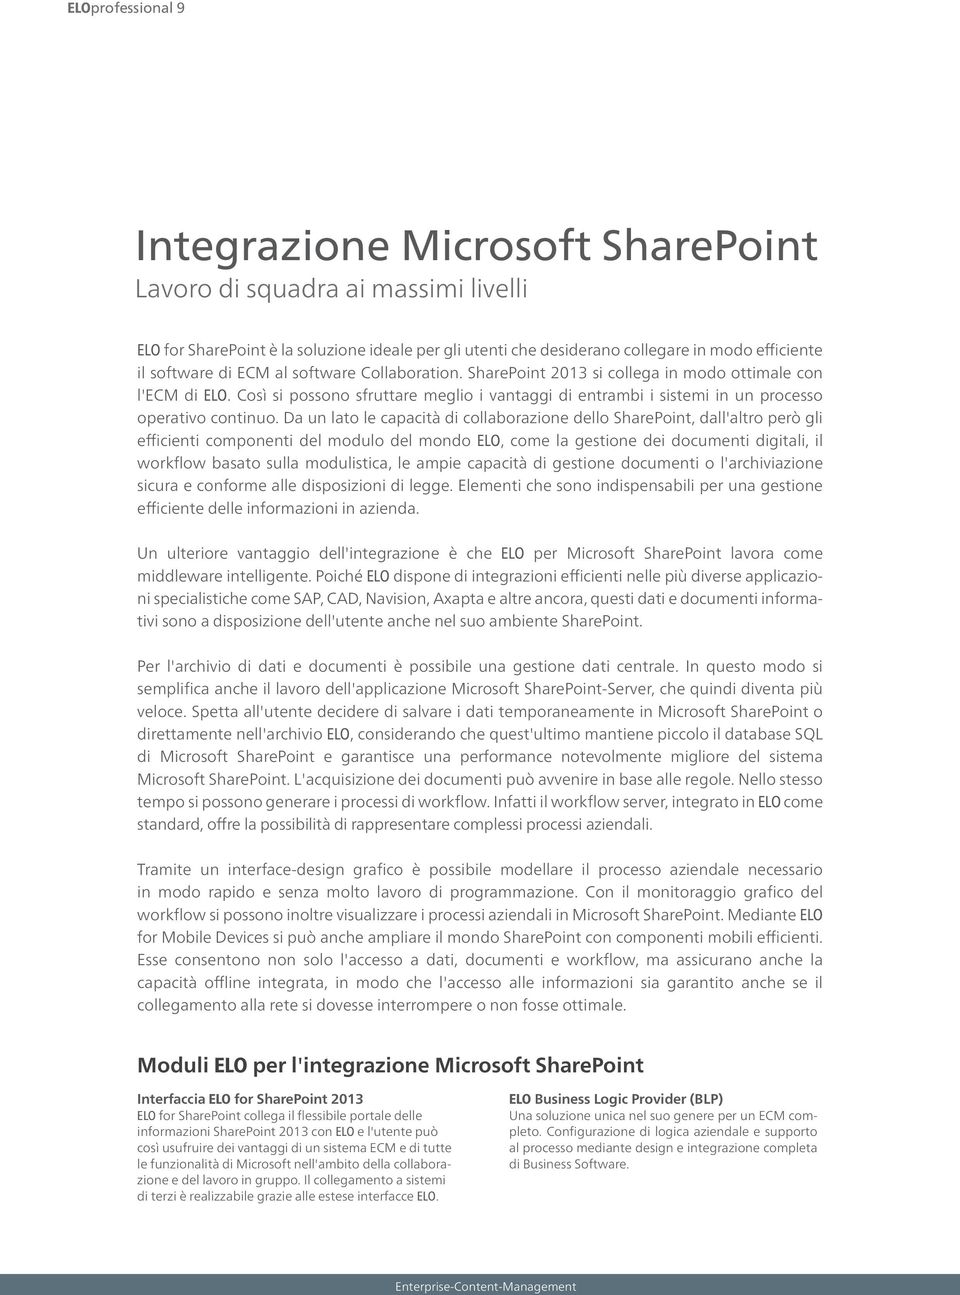 Da un lato le capacità di collaborazione dello SharePoint, dall'altro però gli efficienti componenti del modulo del mondo ELO, come la gestione dei documenti digitali, il workflow basato sulla